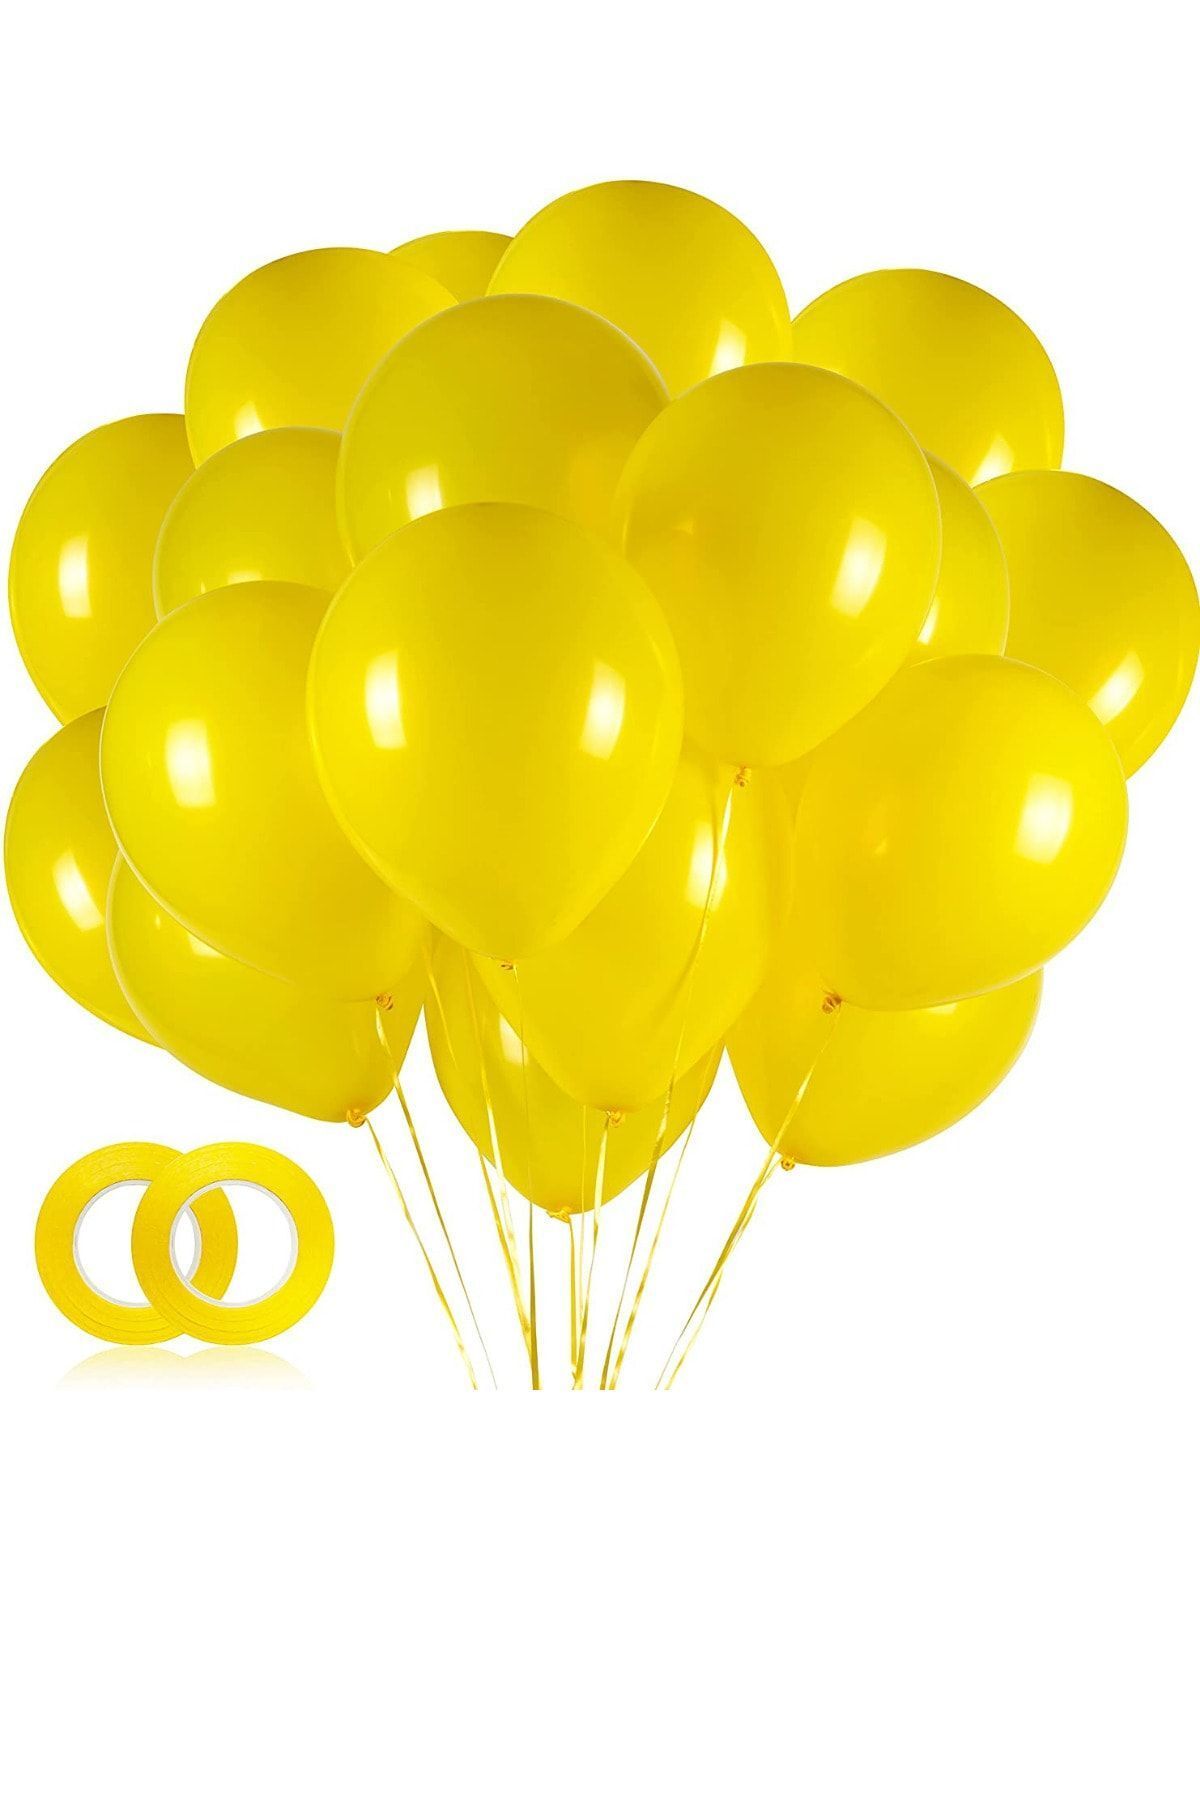 ELGALA Balon Parlak Helyum Balon 10 Adet Sarı Renk